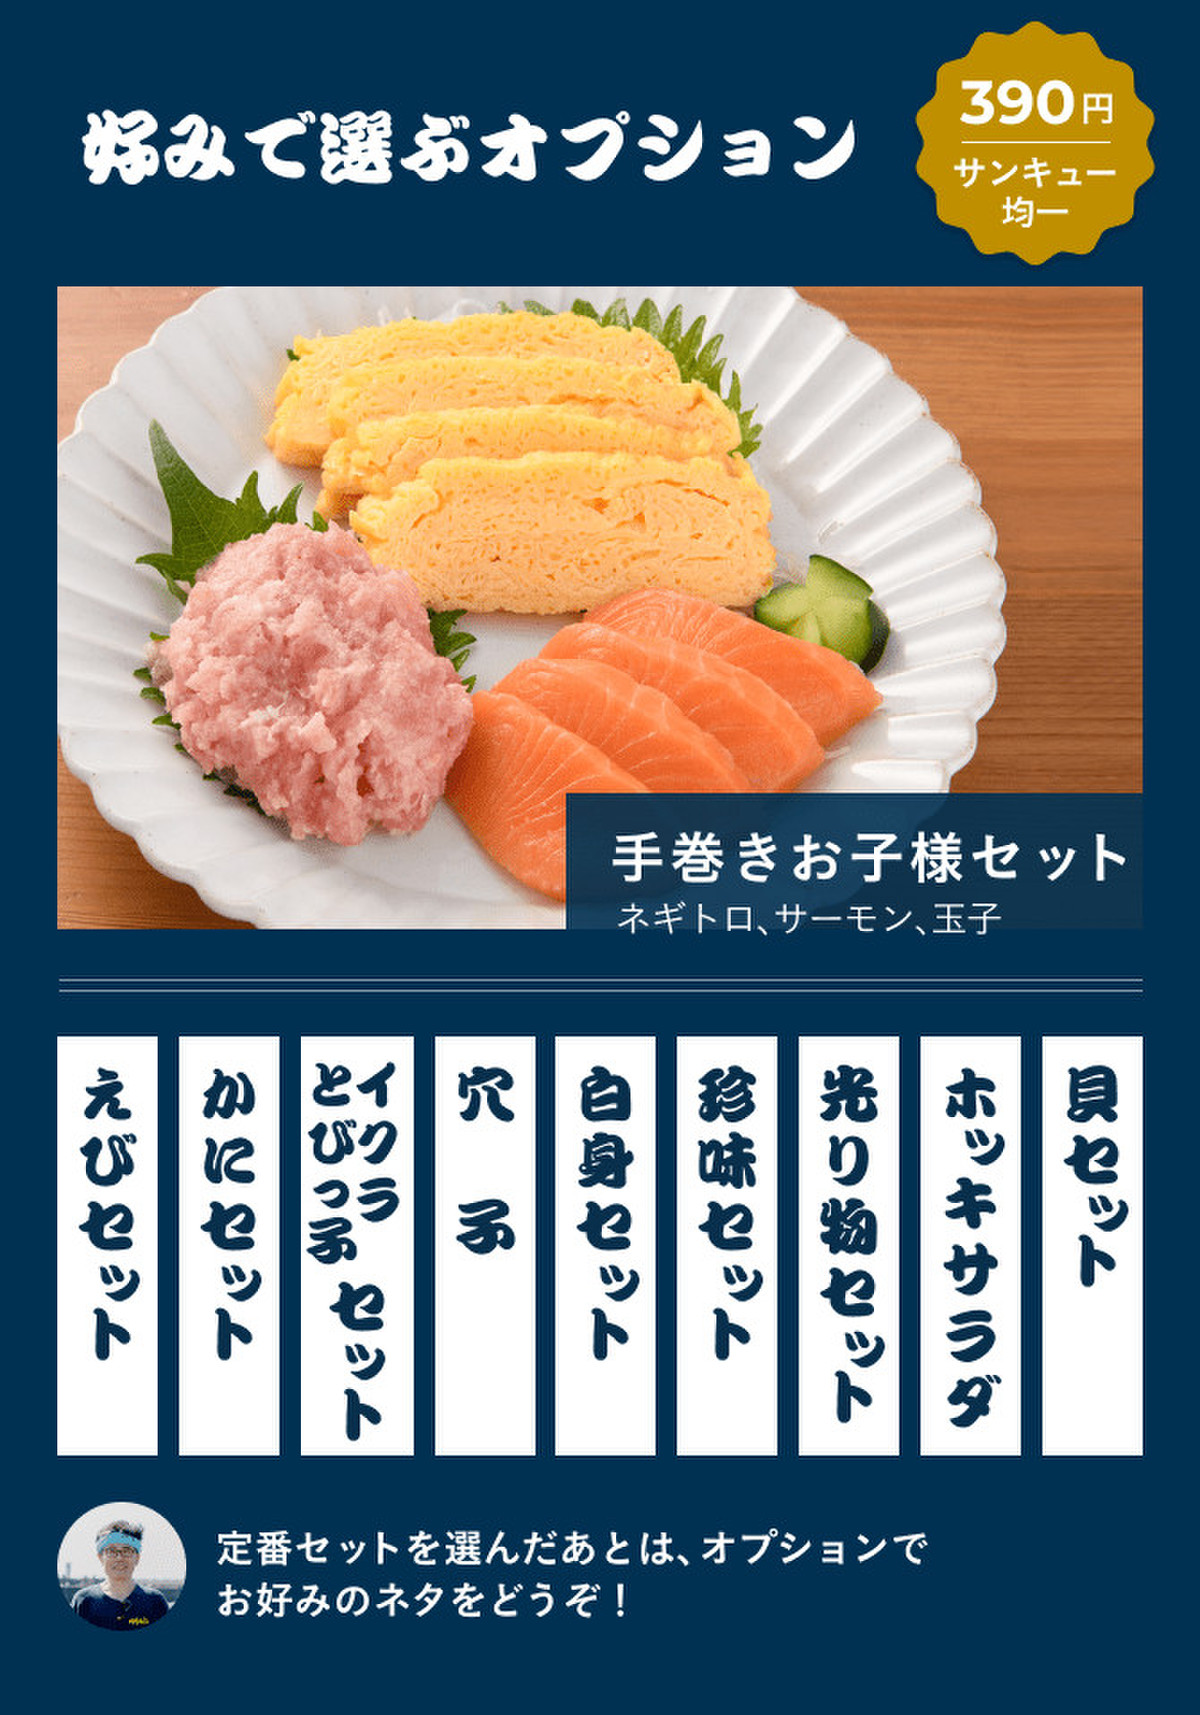 好みで選べる！手巻き寿司セット | クックパッドマート - 毎日が楽しみになる、お買いもの。